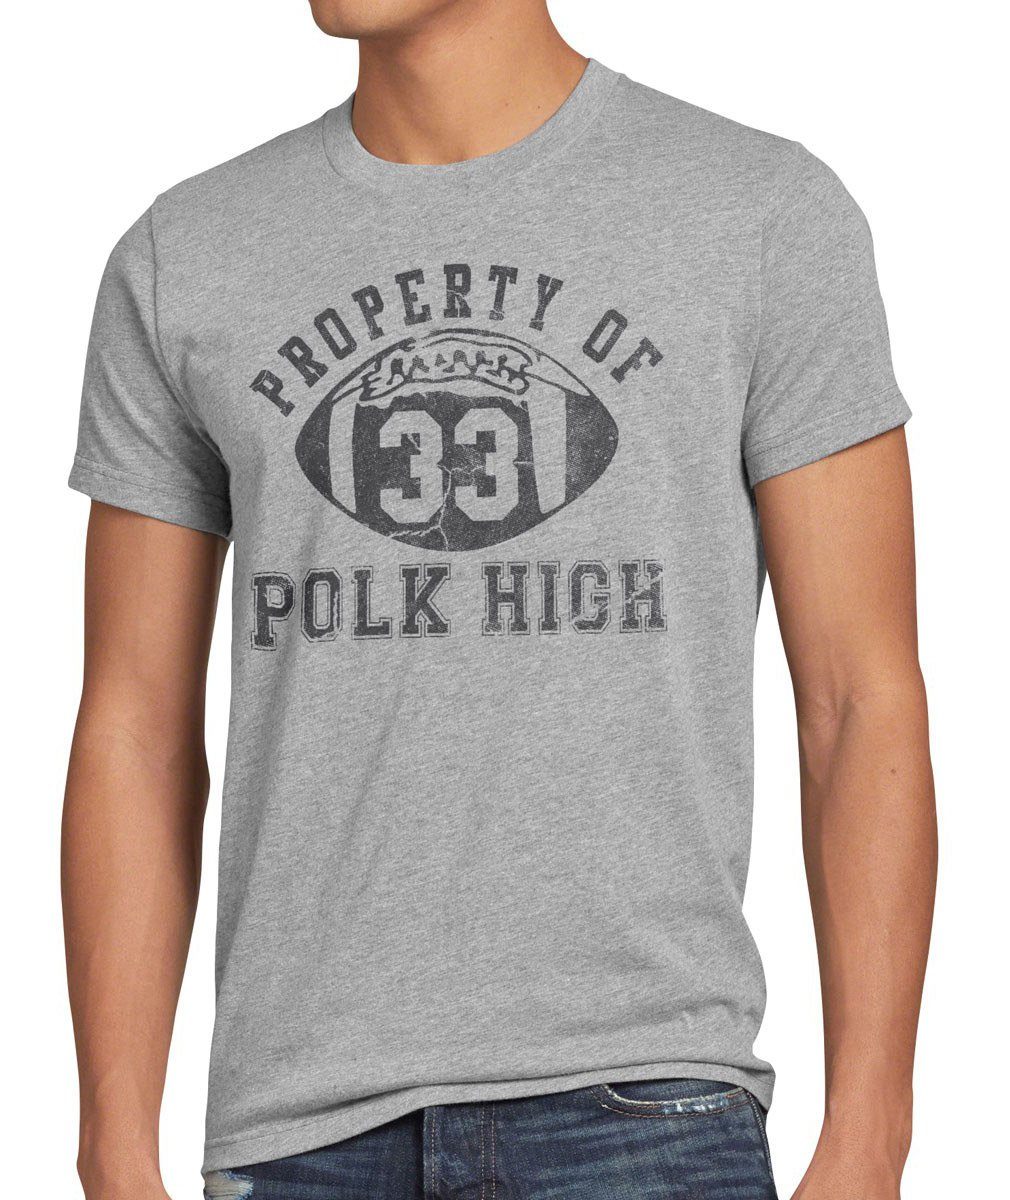 T-Shirt bundy Herren grau Print-Shirt of style3 High Property al football familie Polk meliert schrecklich nette